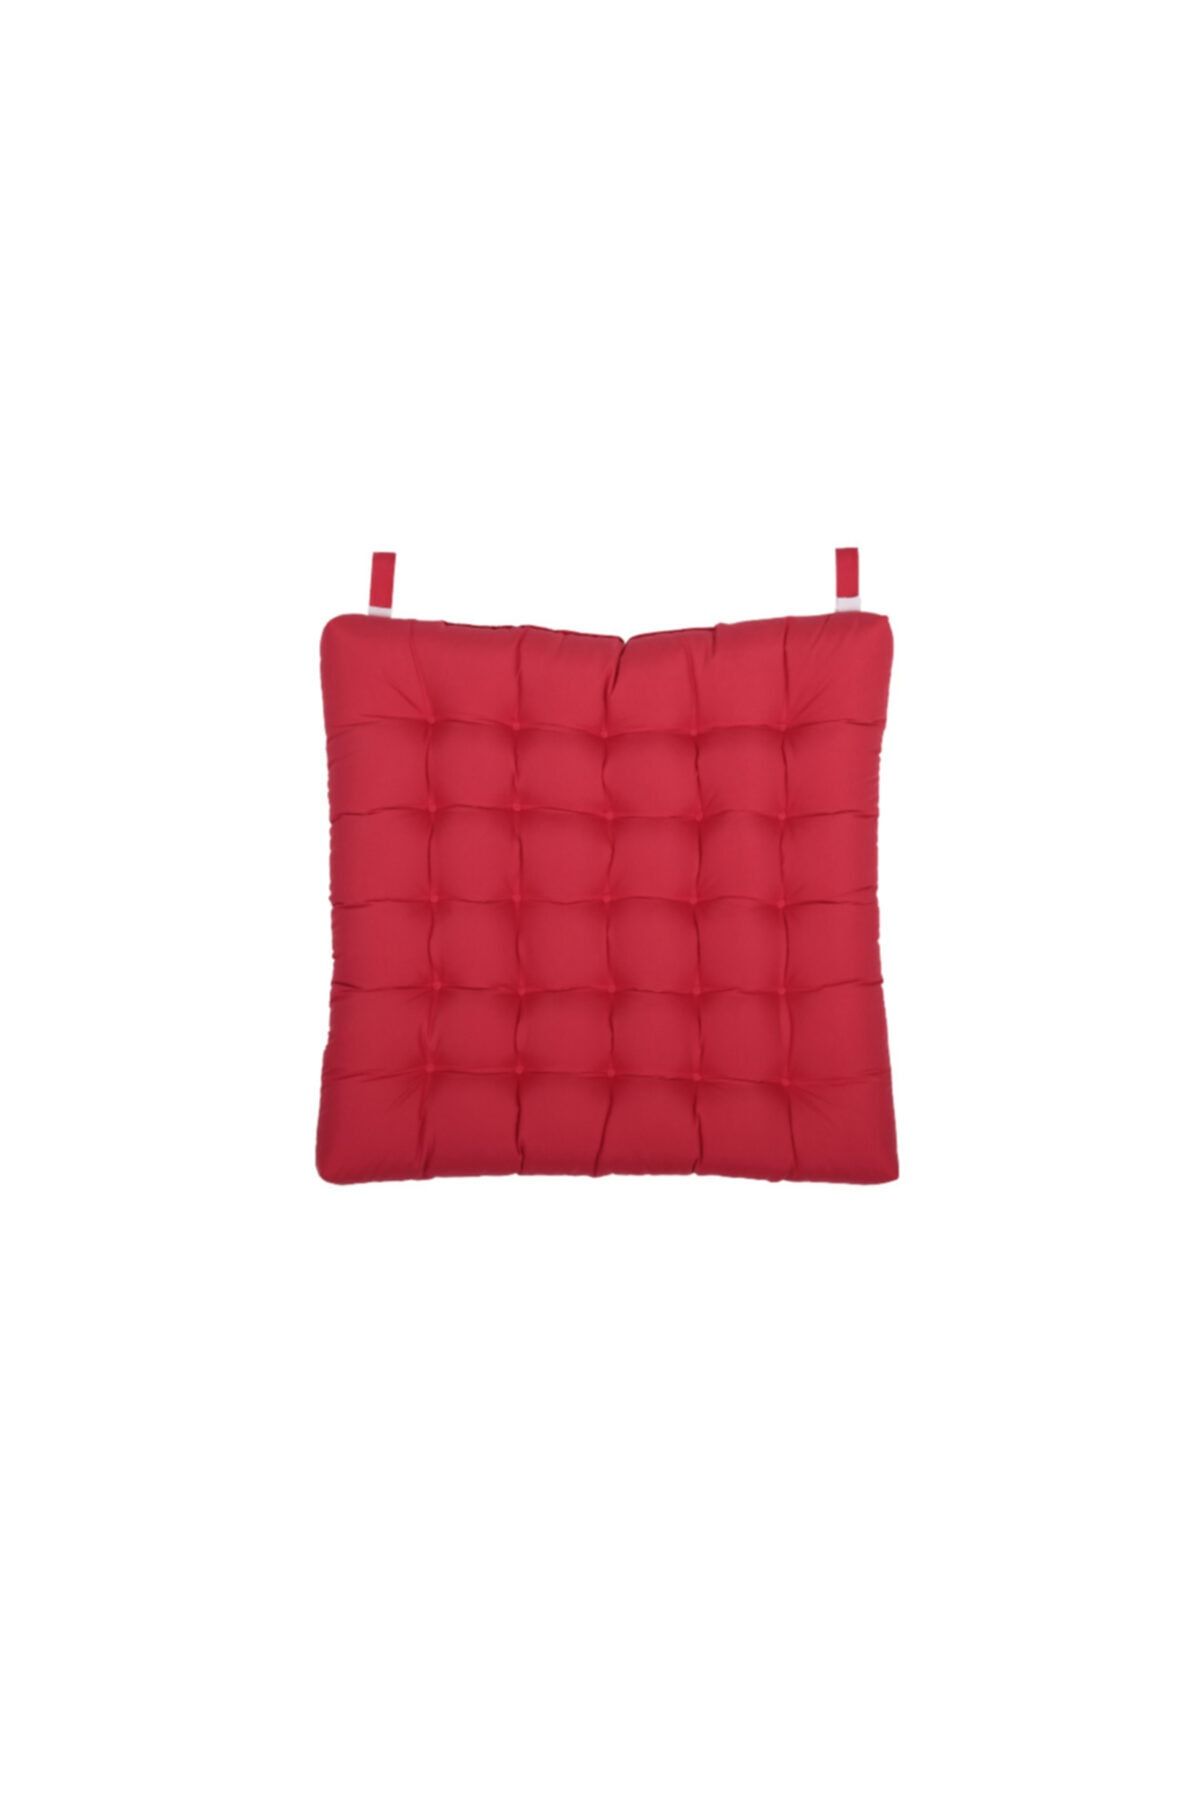 Kuscini Azalea Sandalye Minderi Kırmızı 50x50